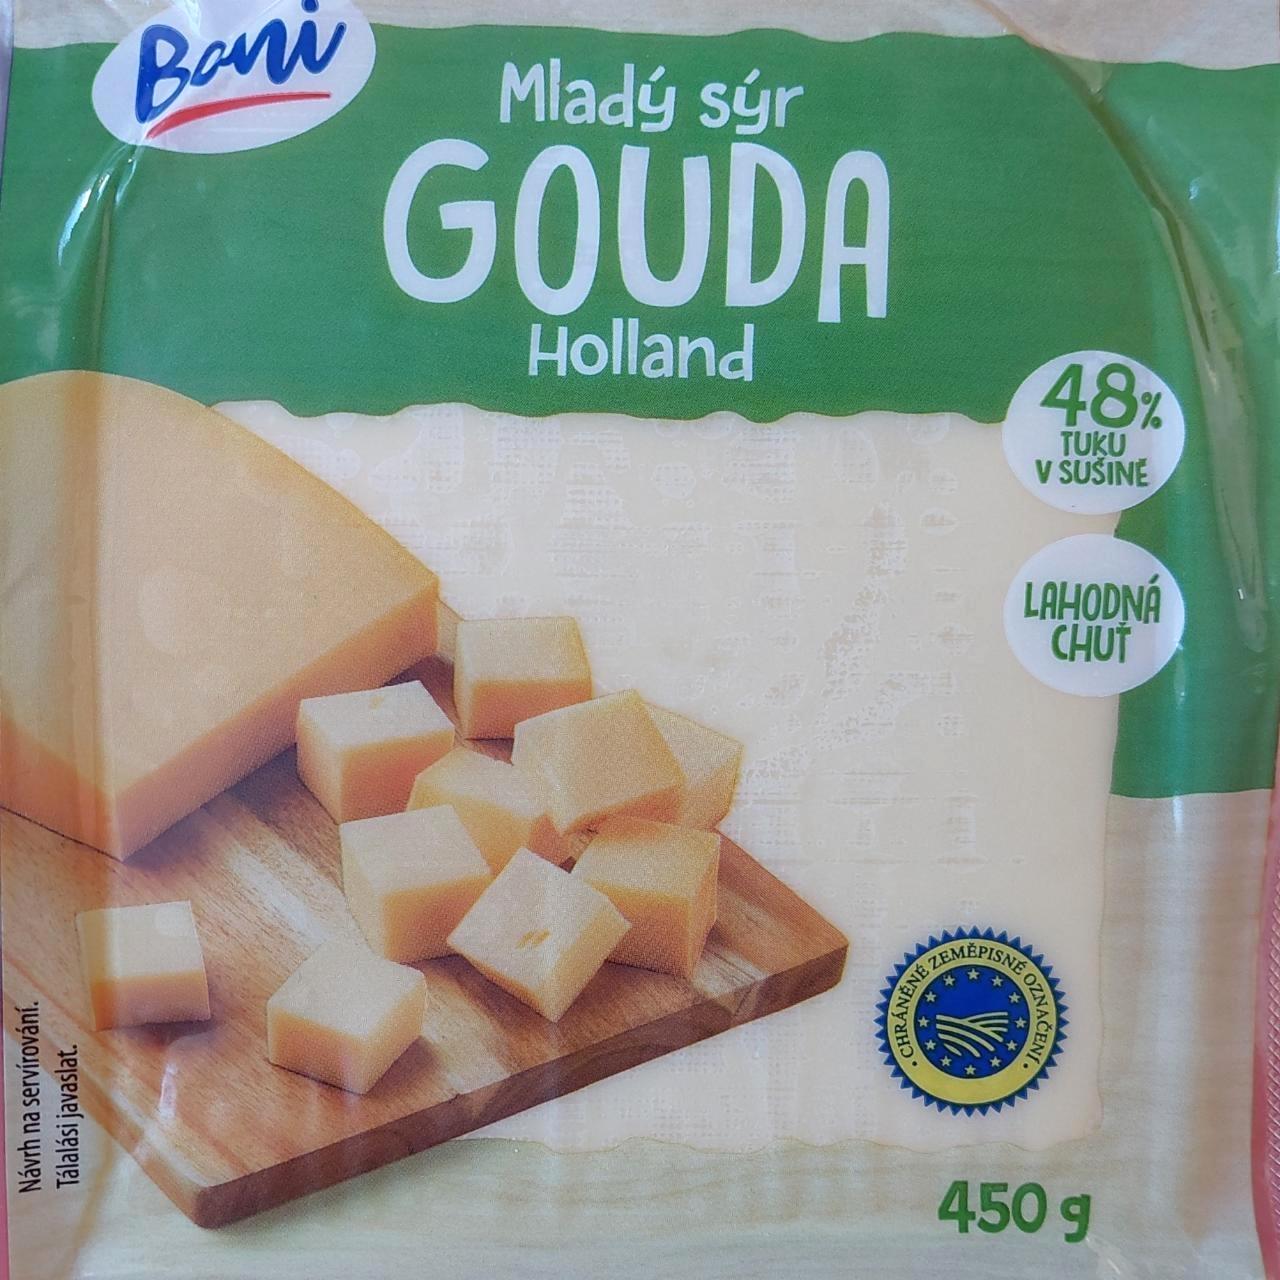 Képek - Mladý sýr Gouda Holland Boni